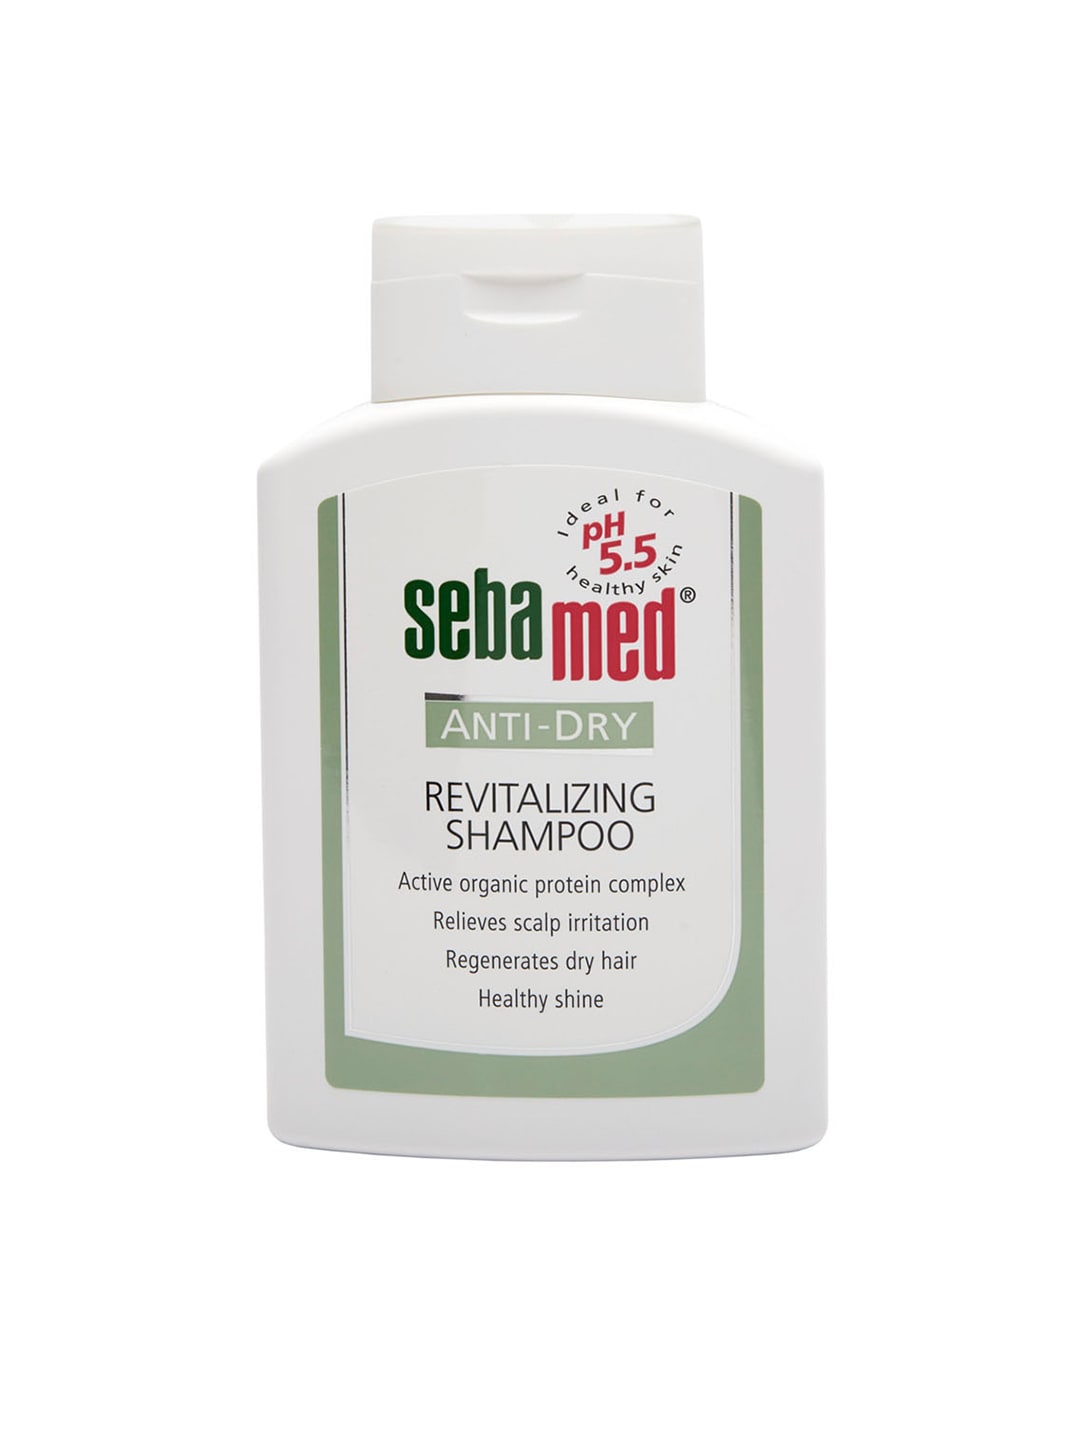 Sebamed Unisex Anti-Dry Revitalizing Shampoo 200 ml Price in India